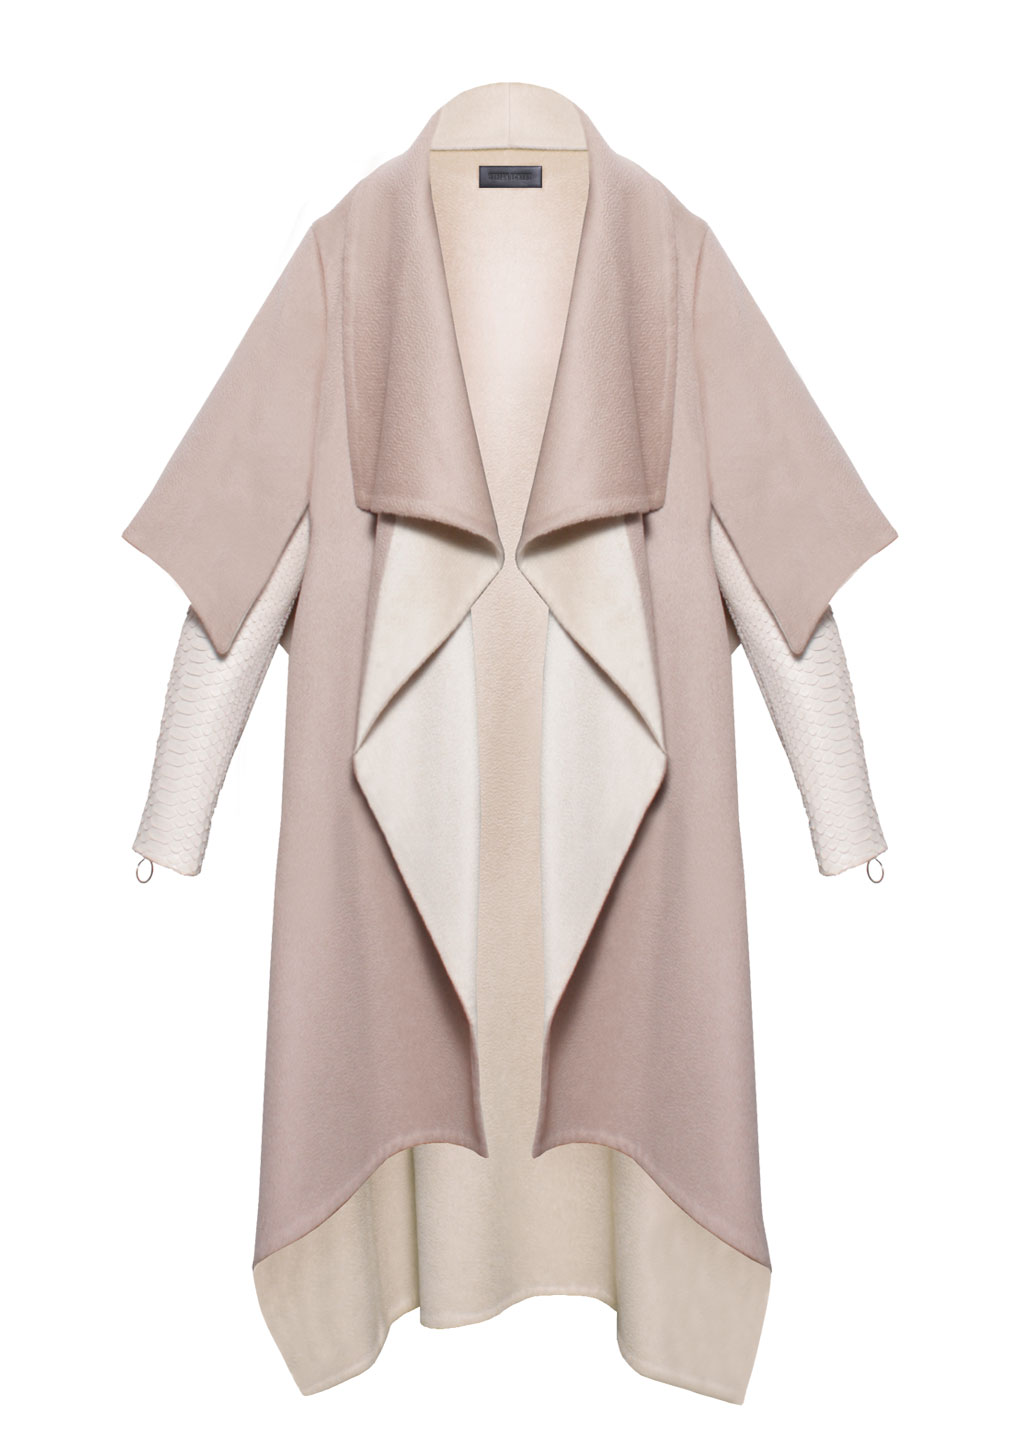 Luxus Mantel Double Kaschmir mit Pythonärmeln für Damen von Designer Stefan Eckert, in Farbe beige, Erhältlich im Onlineshop und als Maßanfertigung im Store in Hamburg